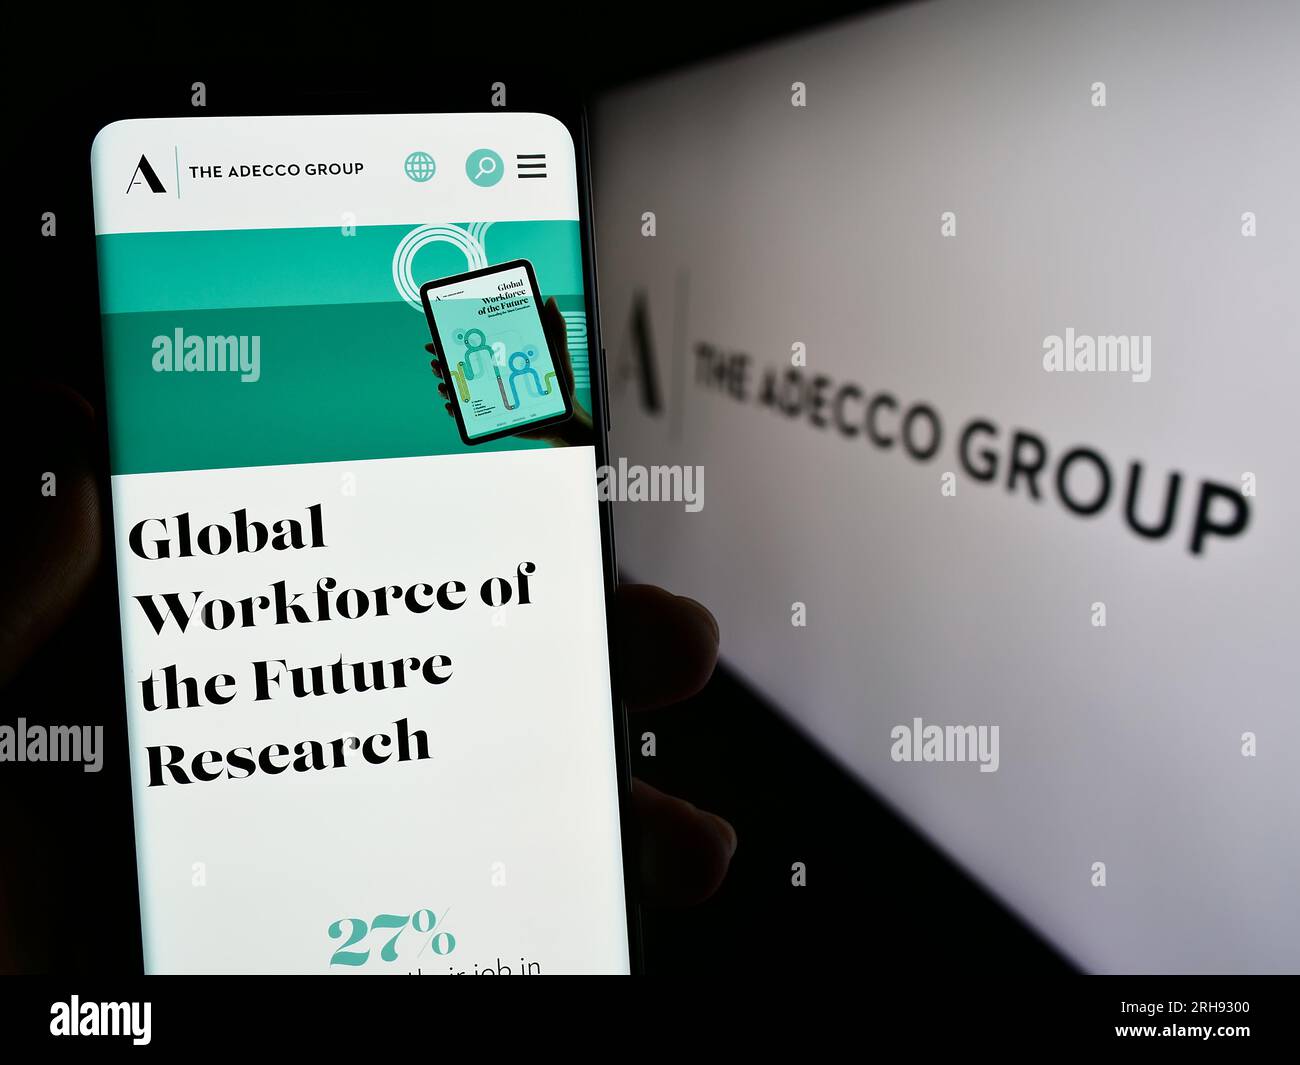 Persona in possesso di un cellulare con pagina Web della società delle risorse umane Adecco Group AG sullo schermo davanti al logo. Concentrarsi sul centro del display del telefono. Foto Stock